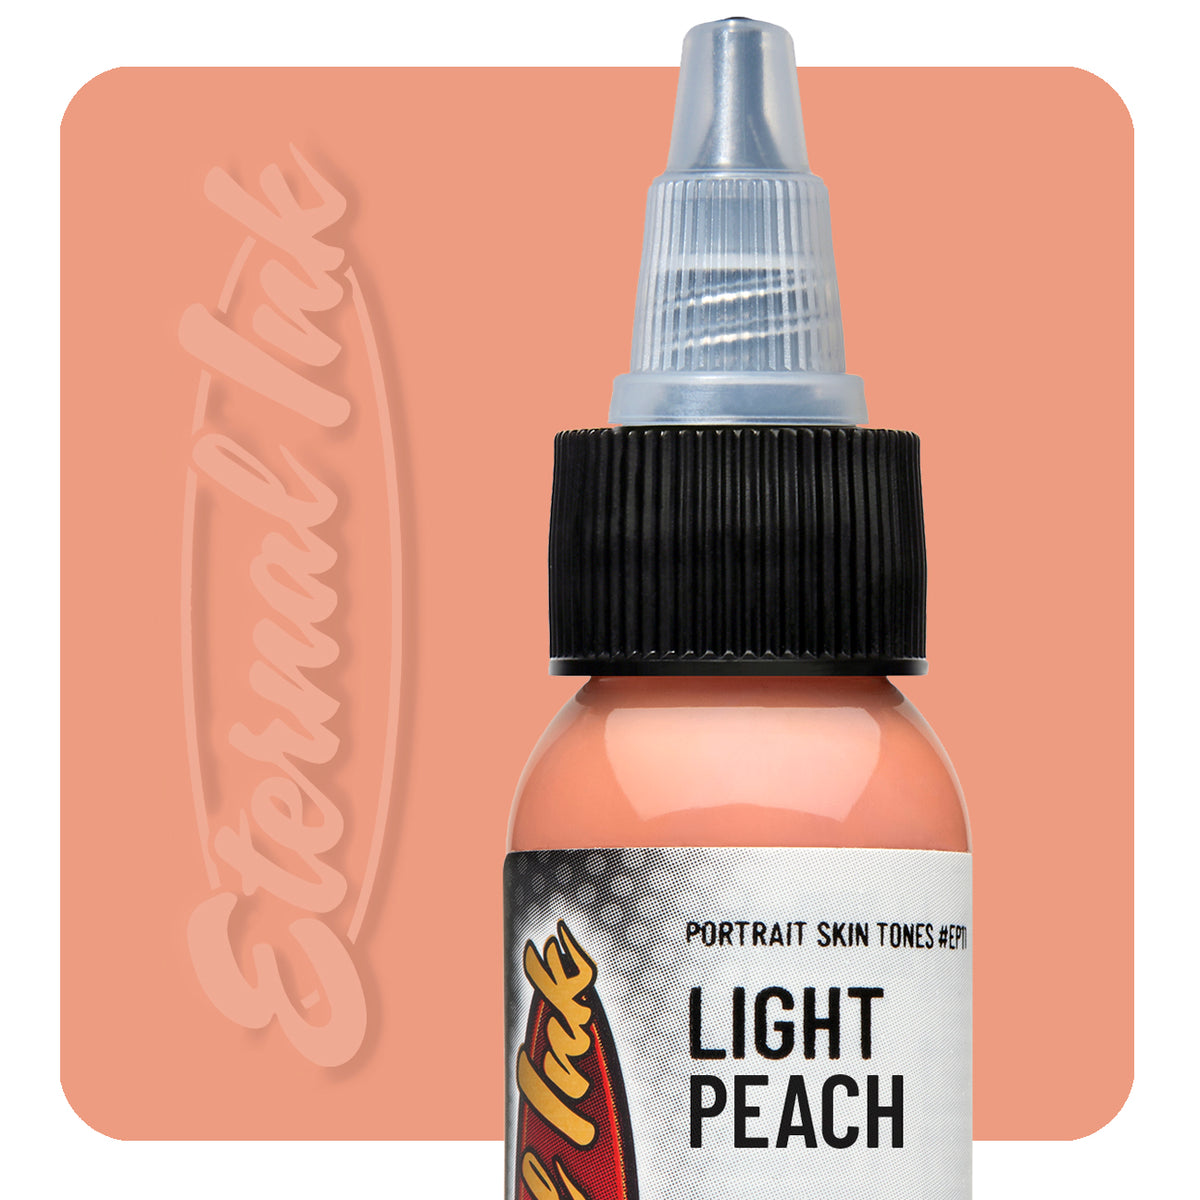 Light Peach